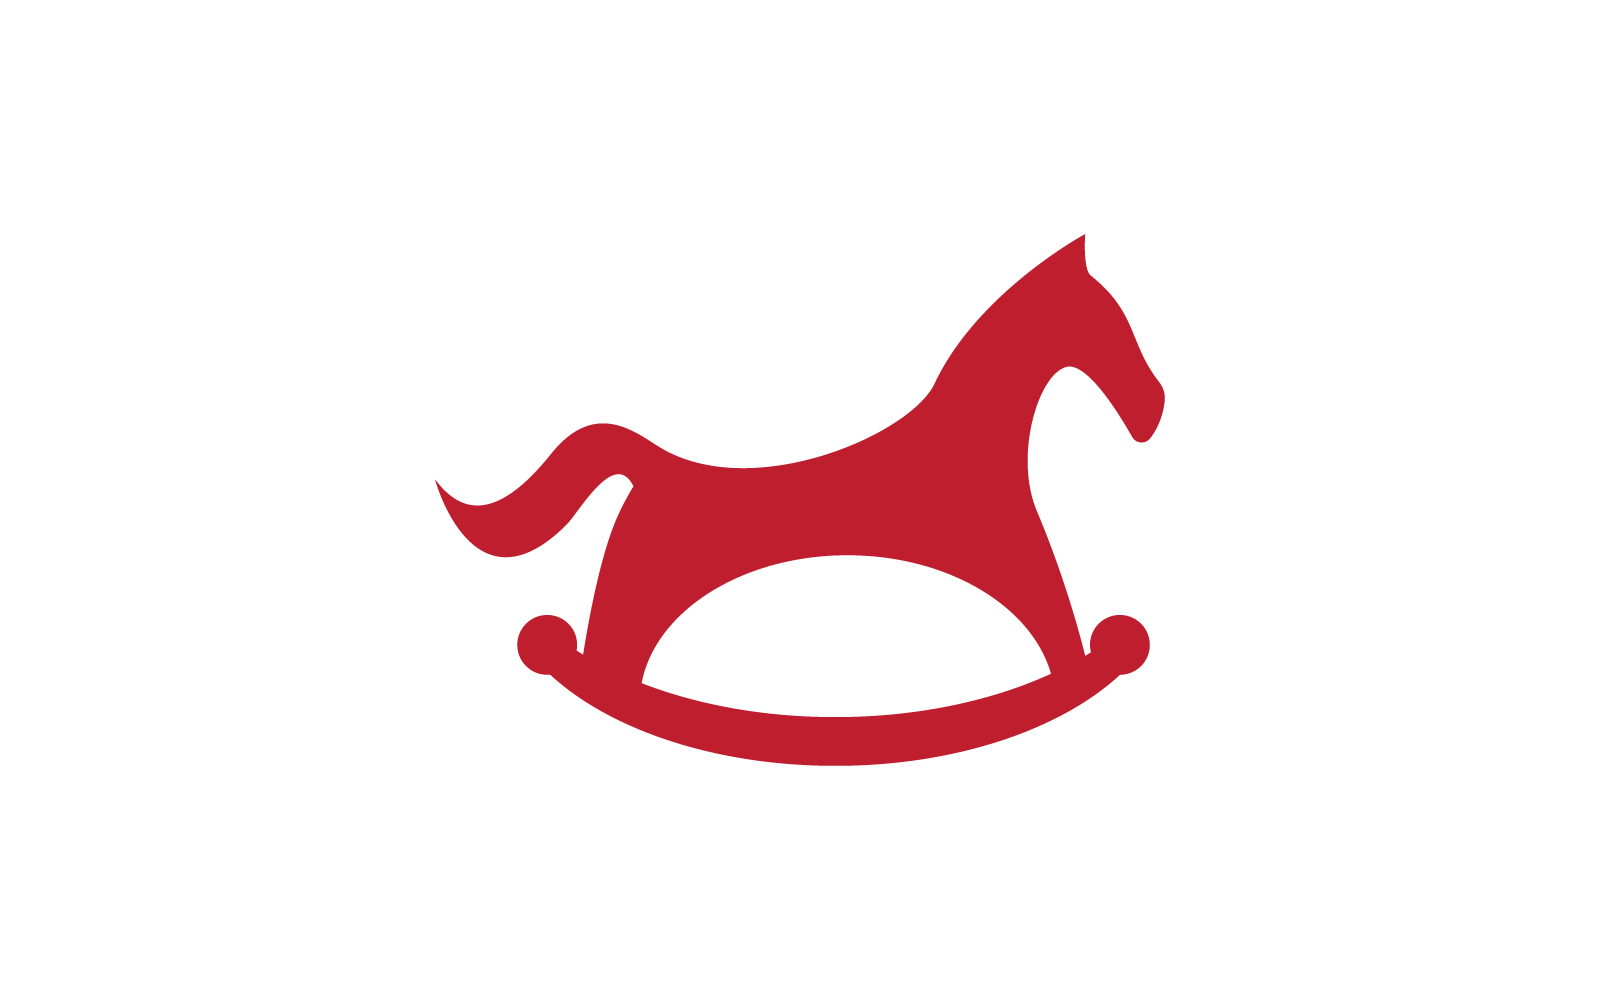 Rocking horse toy kids shop logo illustration vector